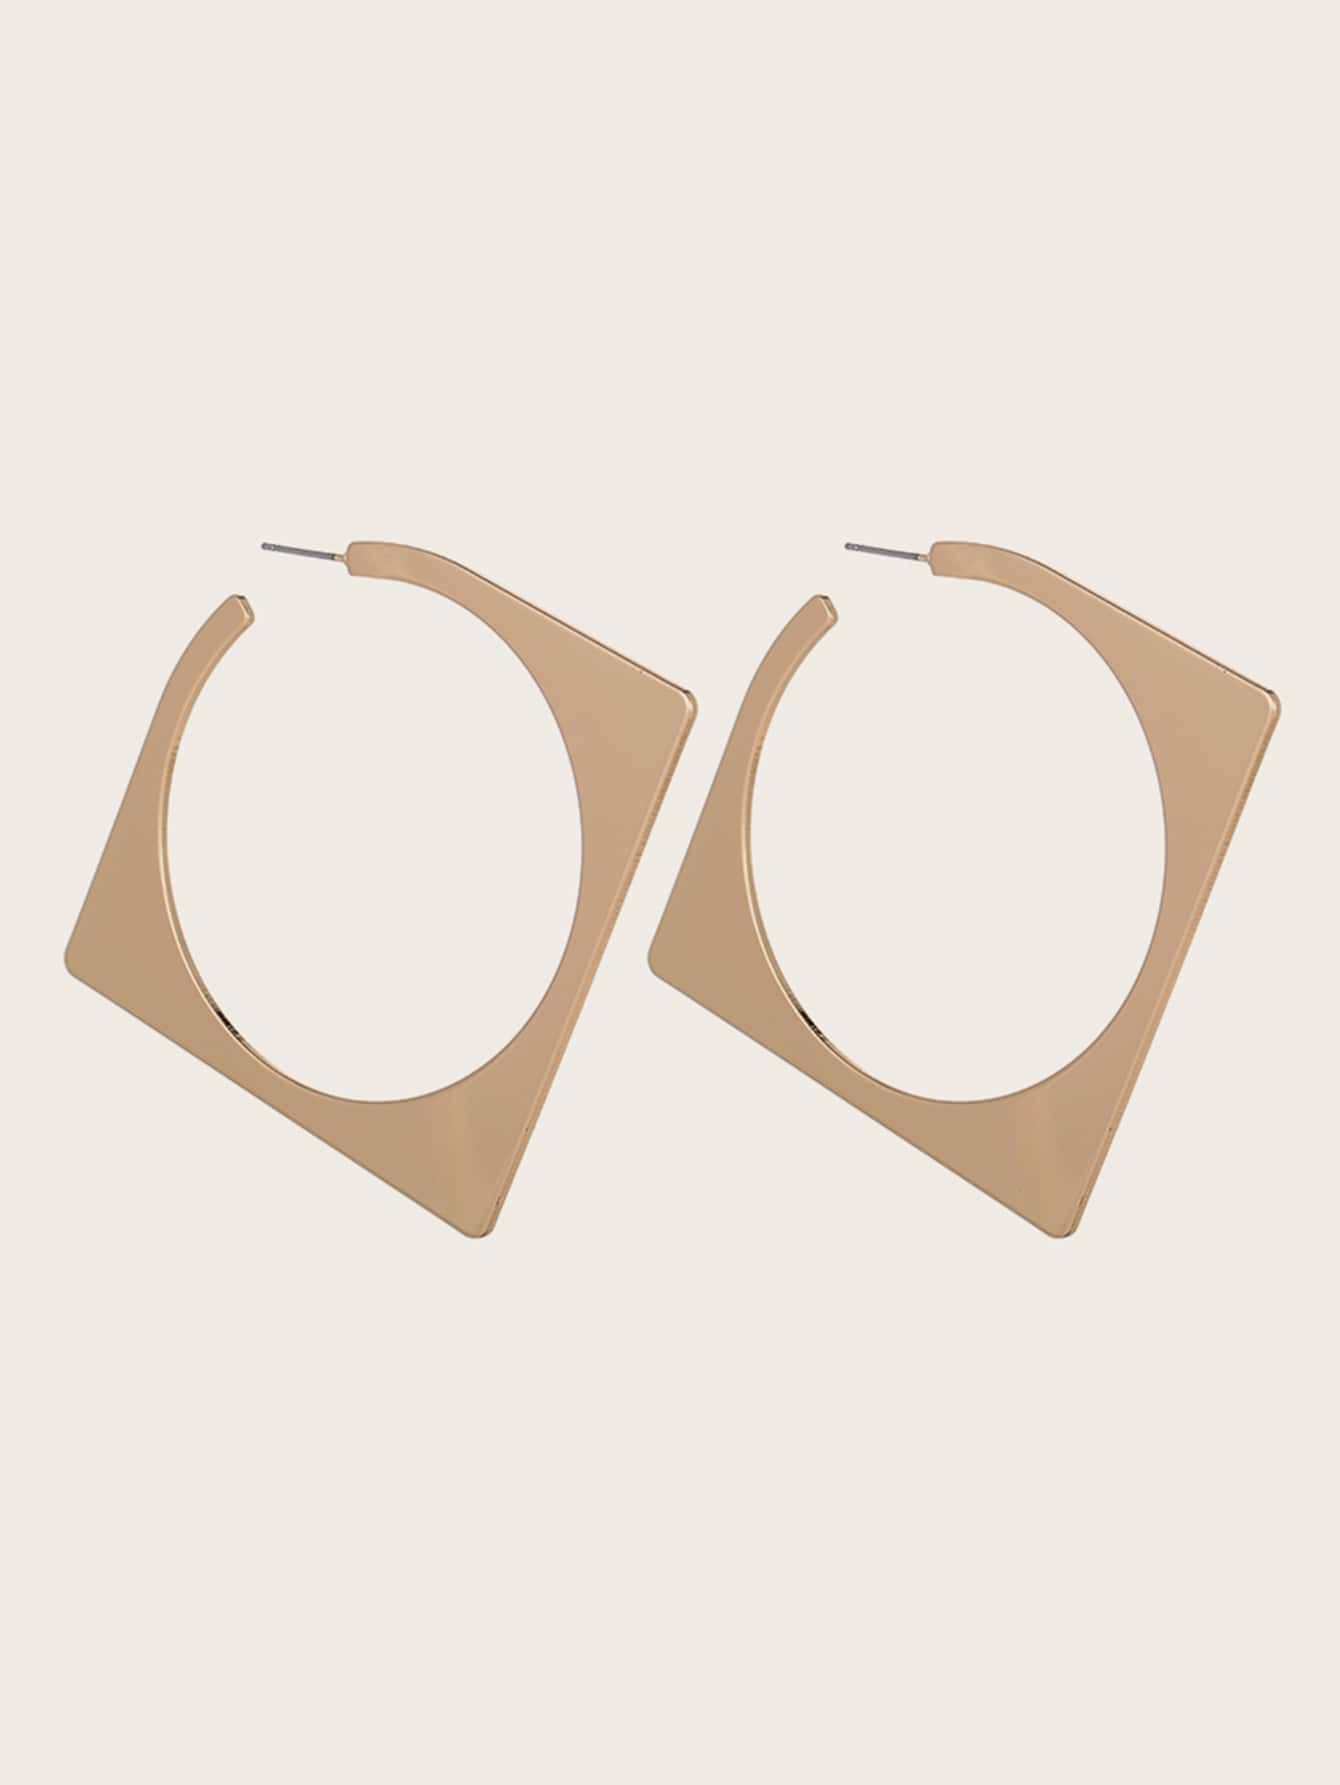 1pair Geometric Shaped Hoop Earrings | SHEIN